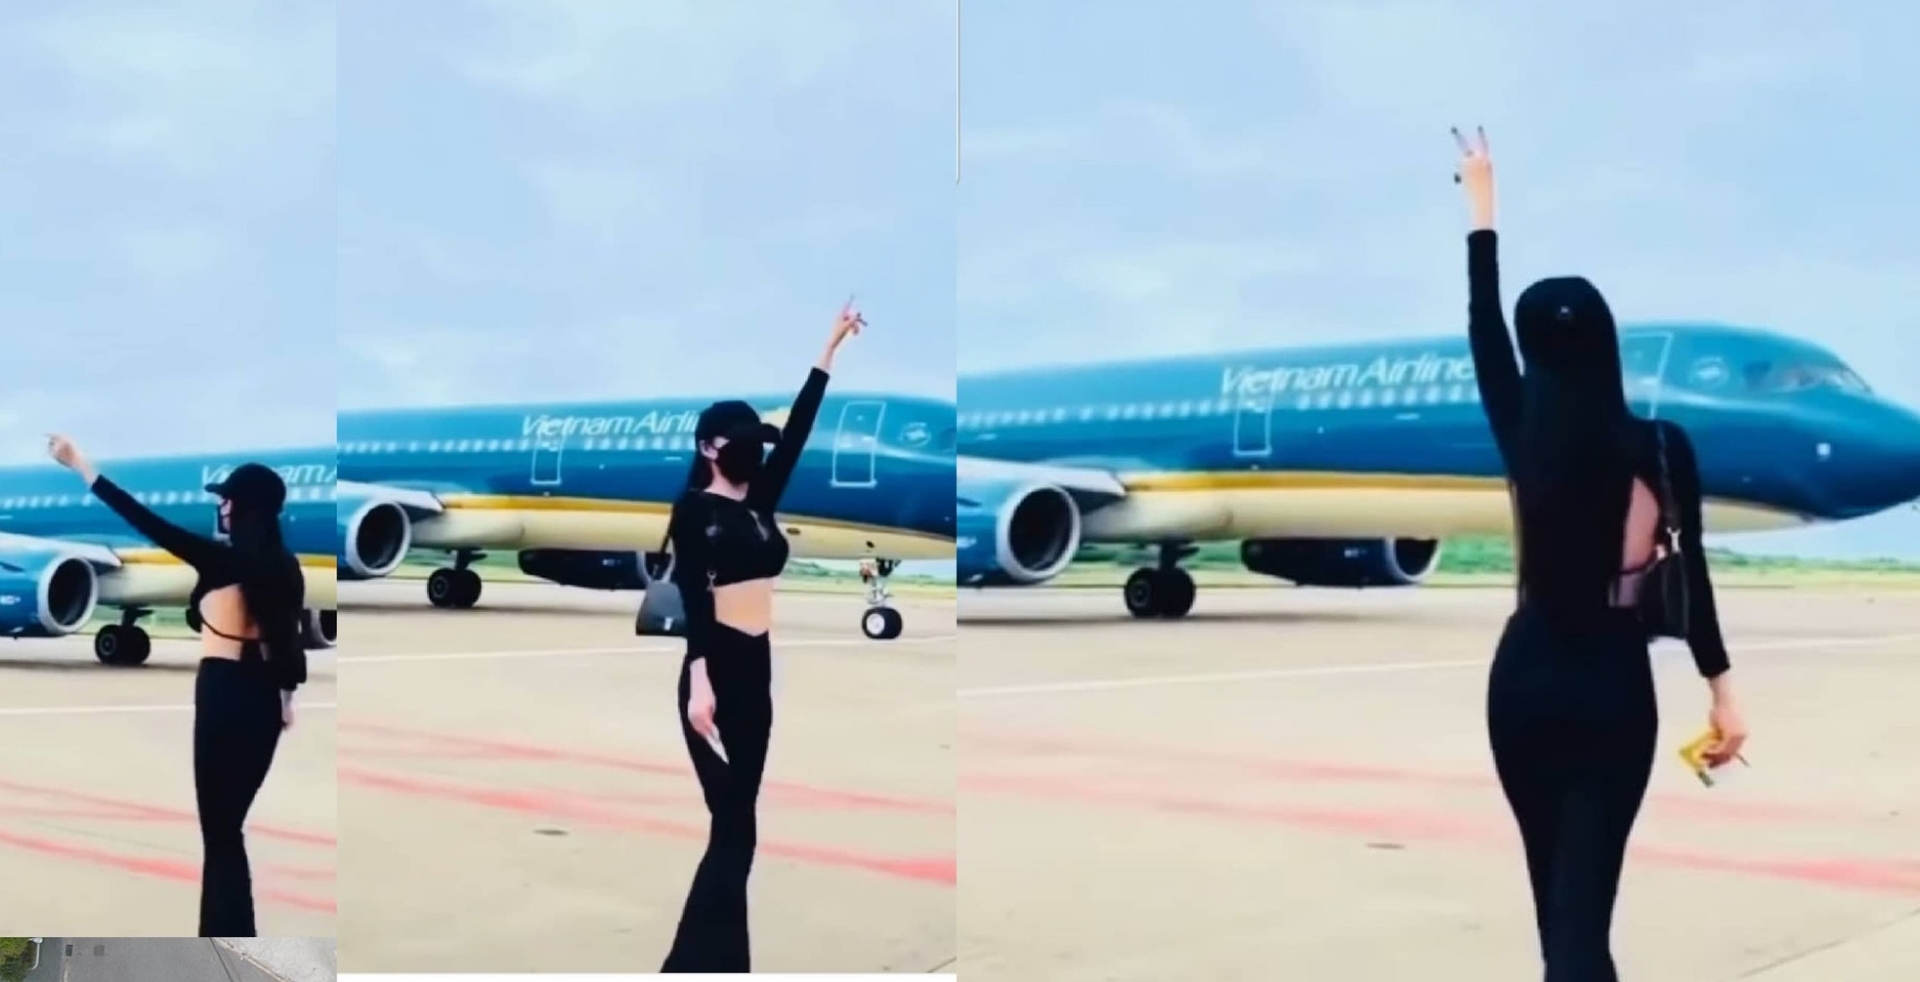 Cấm bay 6 tháng đối với nữ hành khách, nhún nhảy 'sống ảo' quay Tiktok giữa phi trường